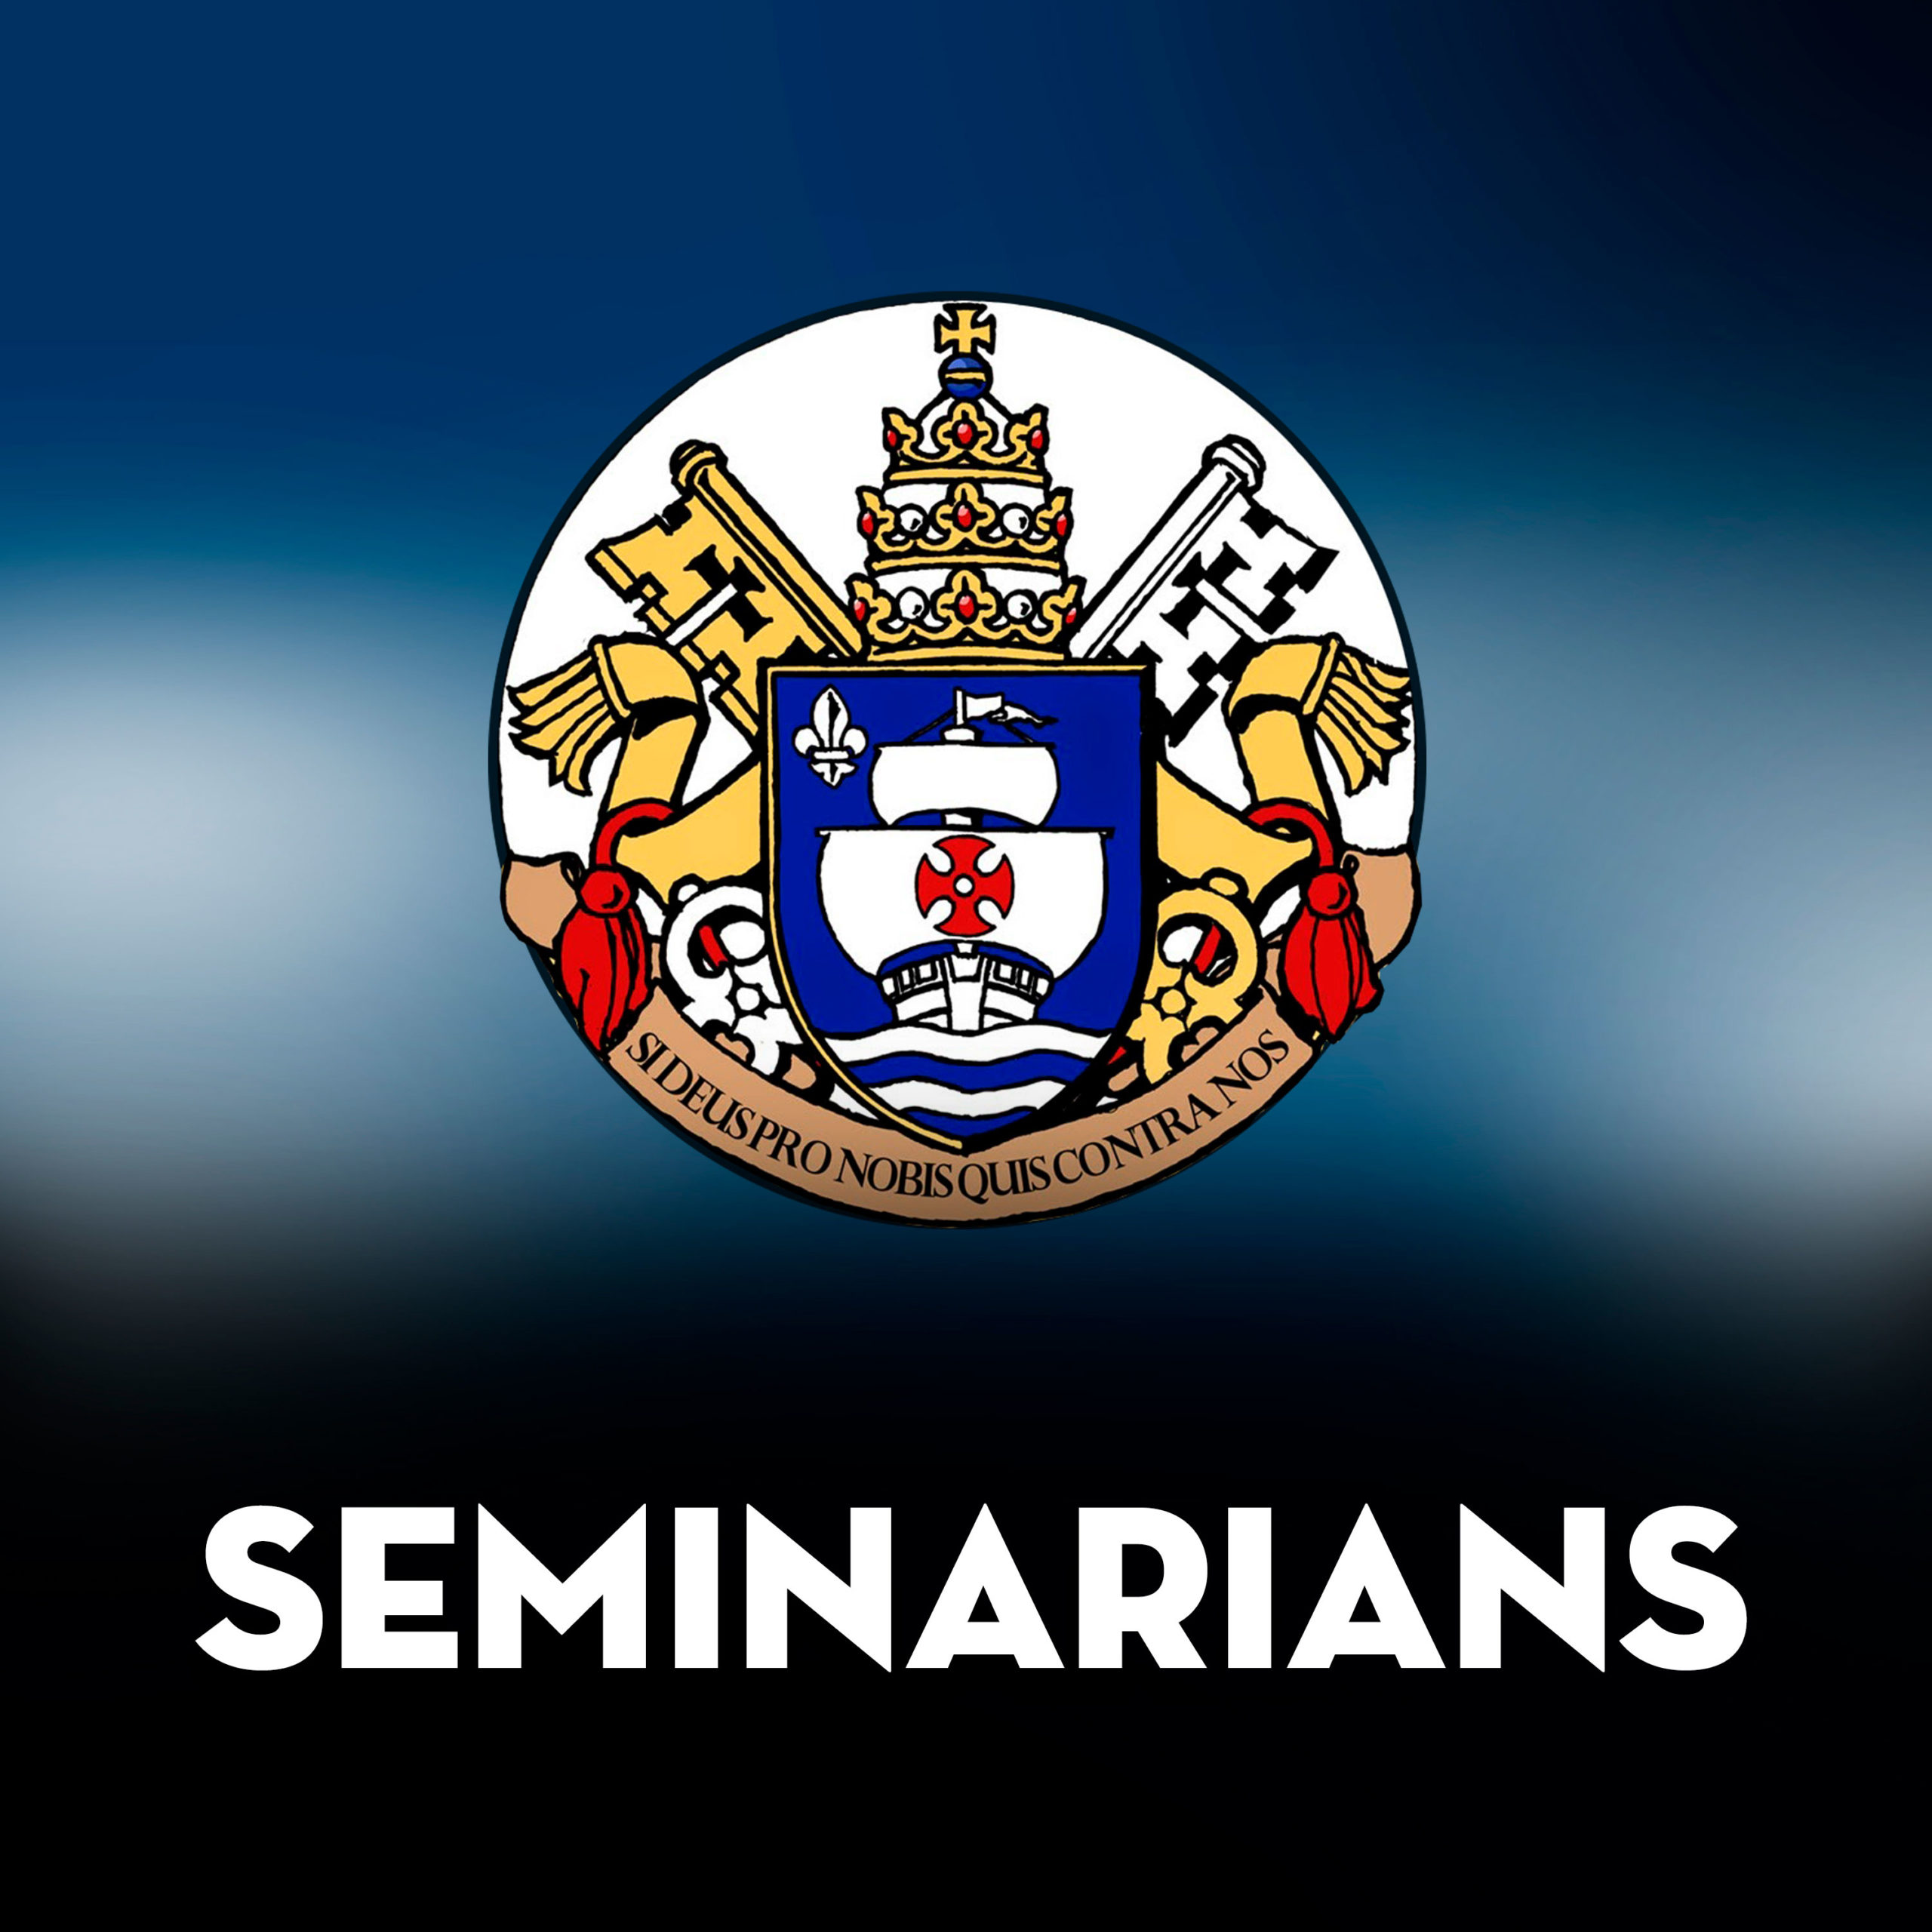 10/31/20-The Seminarians